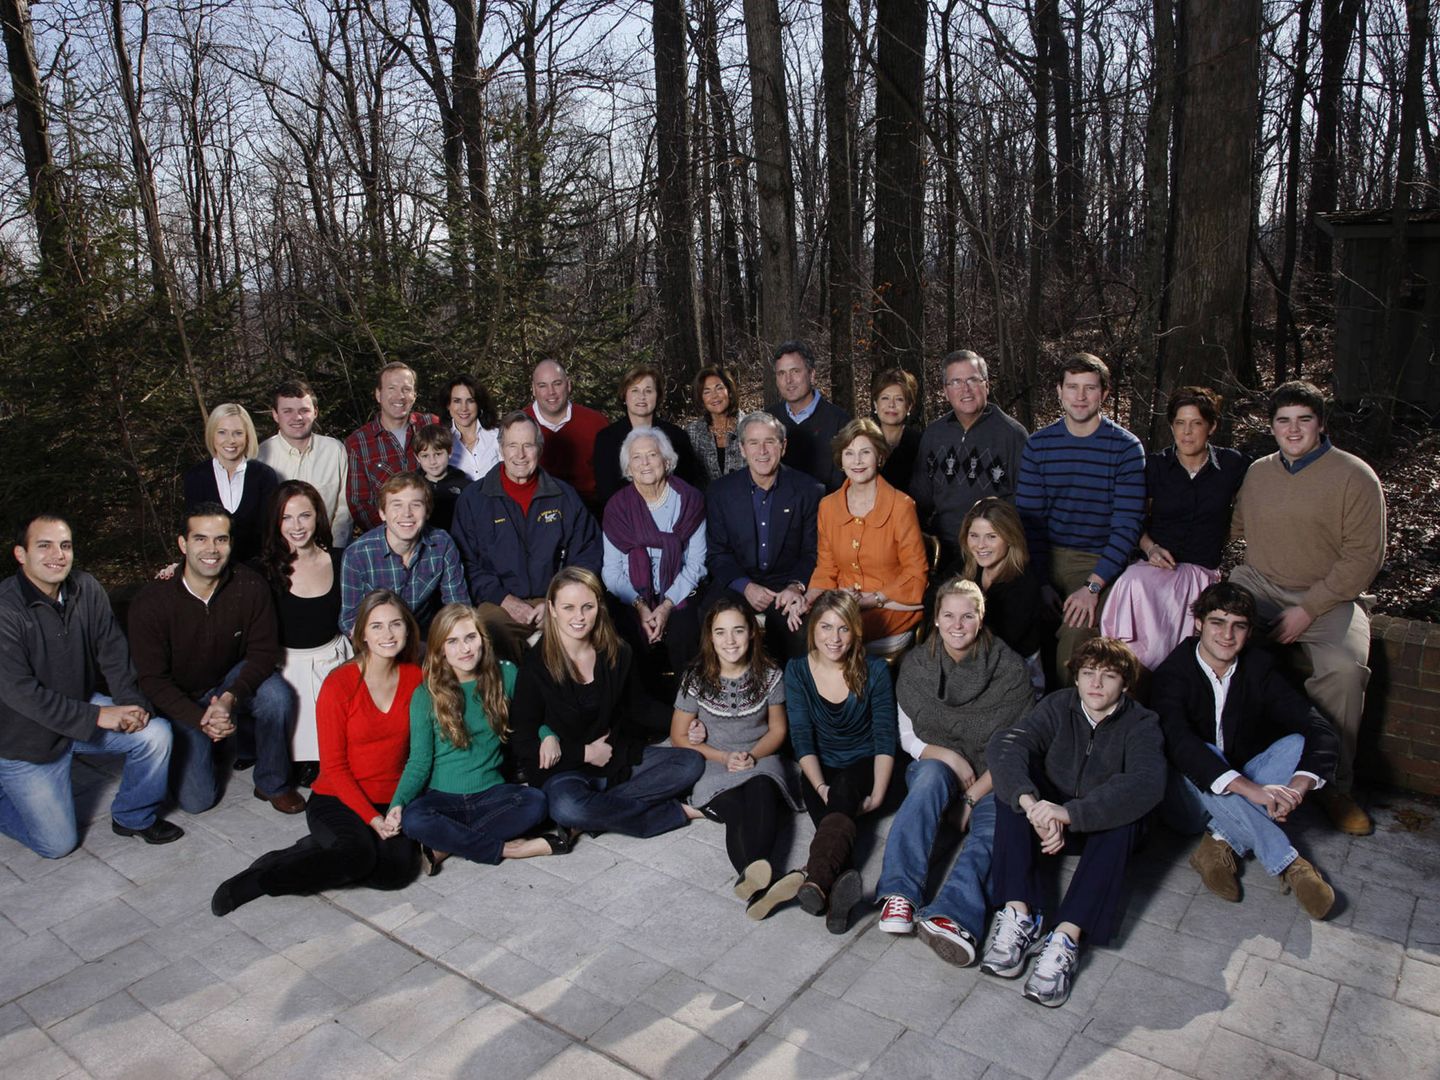 Reunión de la familia Bush en las navidades de 2008. (Getty)